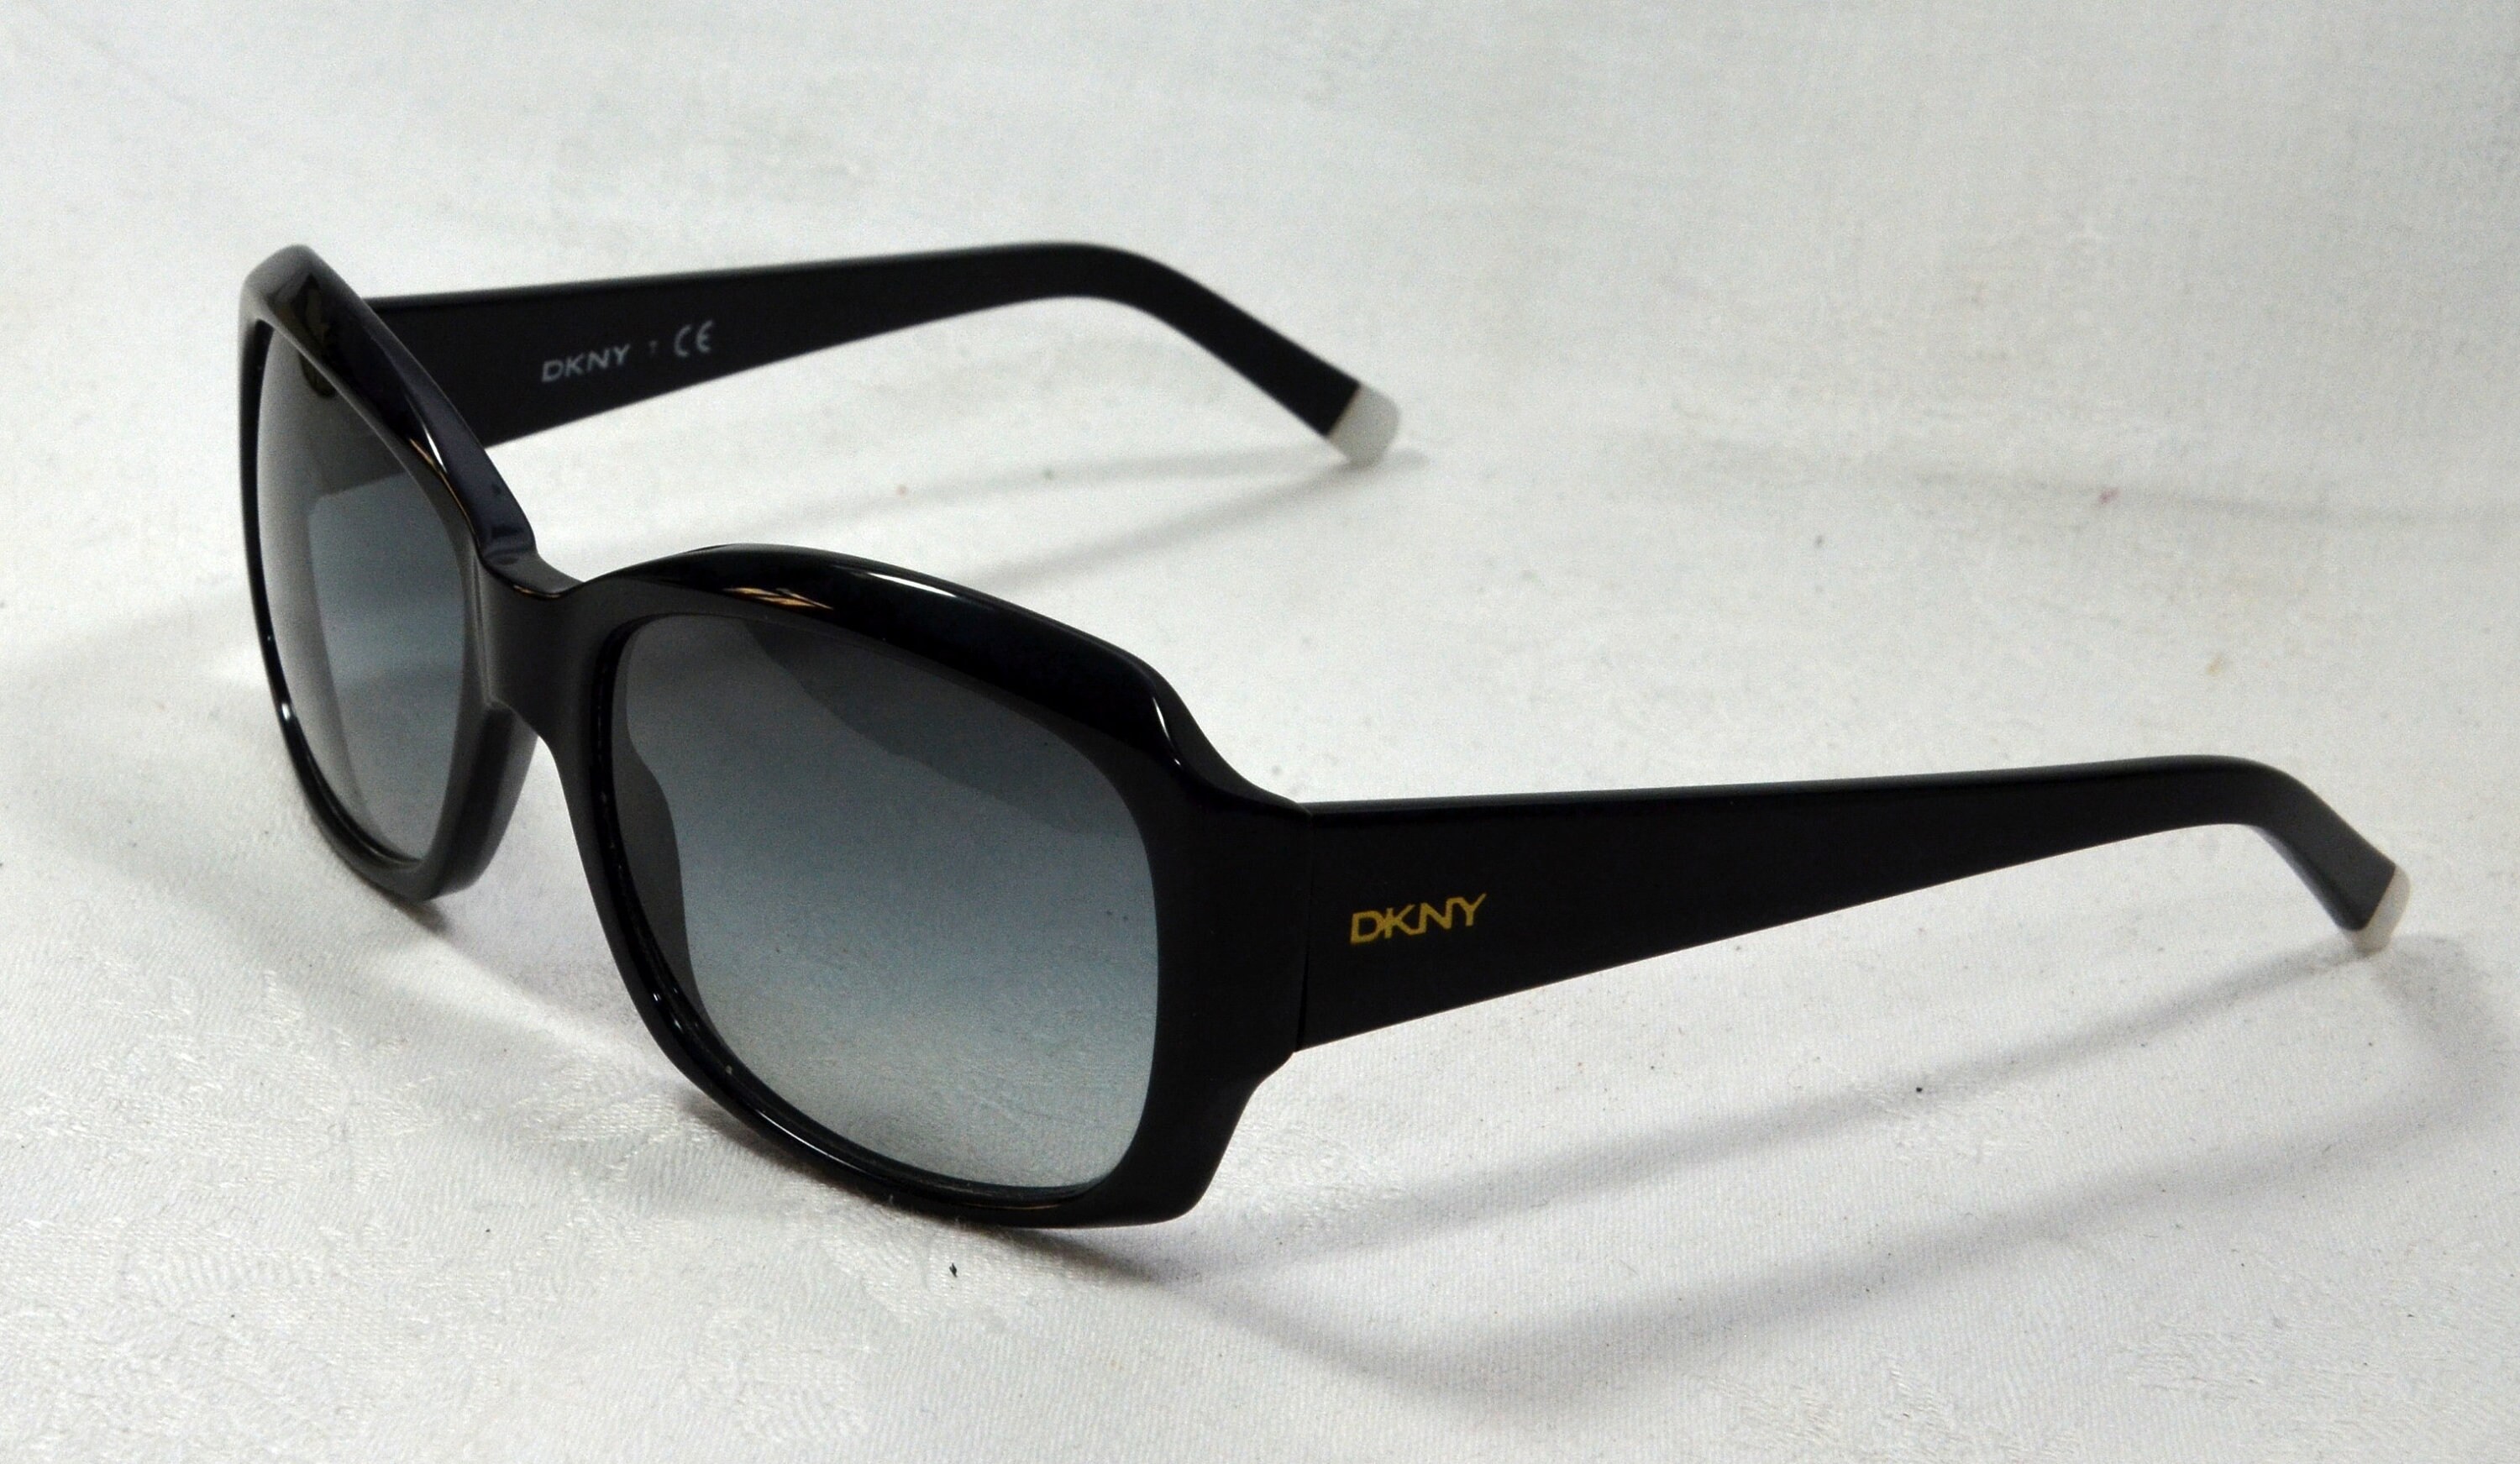 Lunettes de soleil DKNY noir Homme Accessoires DKNY Homme Lunettes de soleil DKNY Homme Lunettes de soleil DKNY Homme 